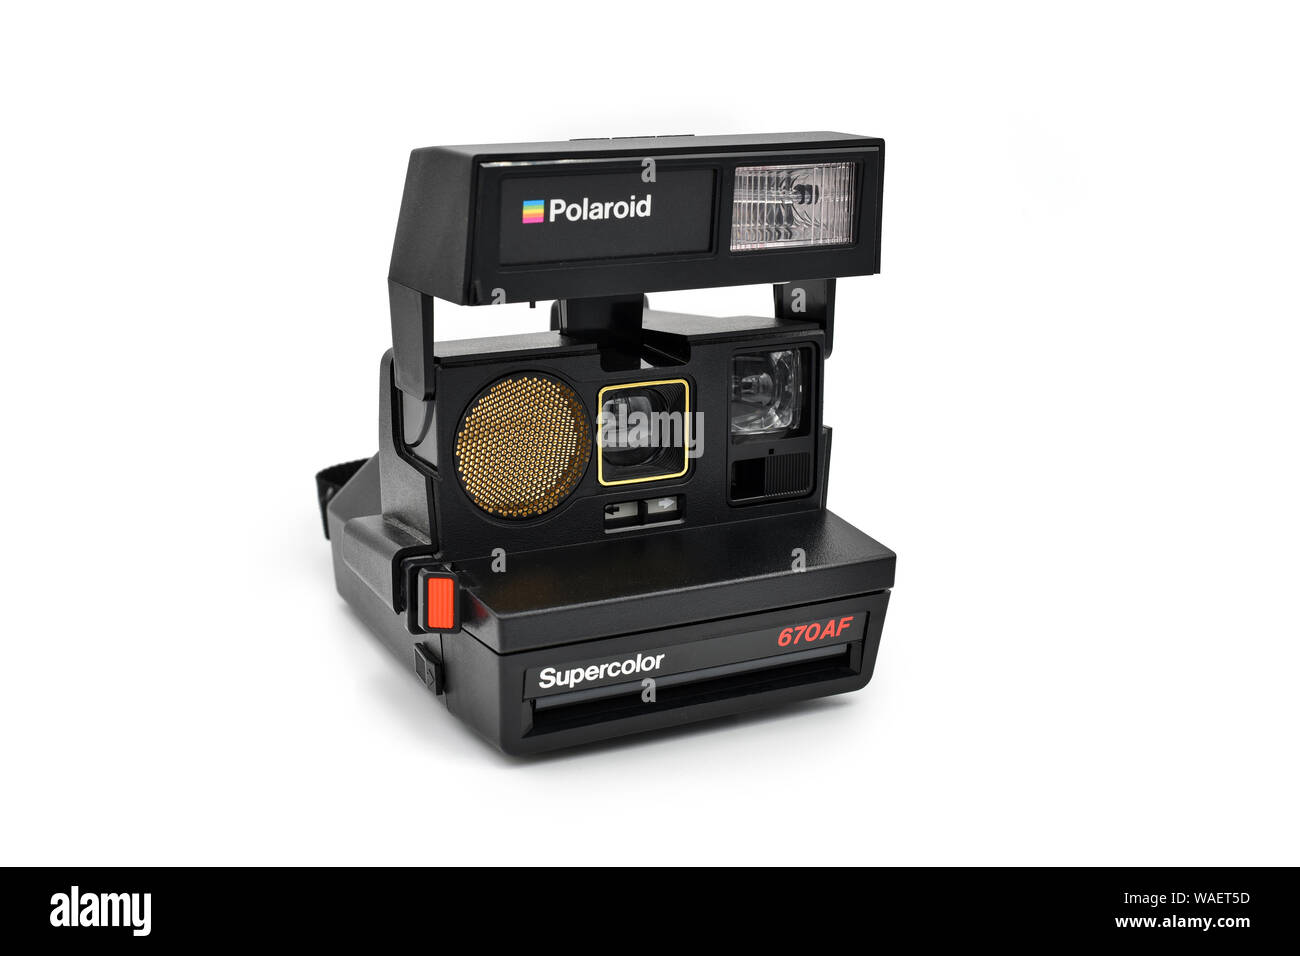 PARIS, FRANCE - 19 août 2019 : Polaroid Supercolor 670 AF est un appareil photo vintage introduit en 1985. Banque D'Images